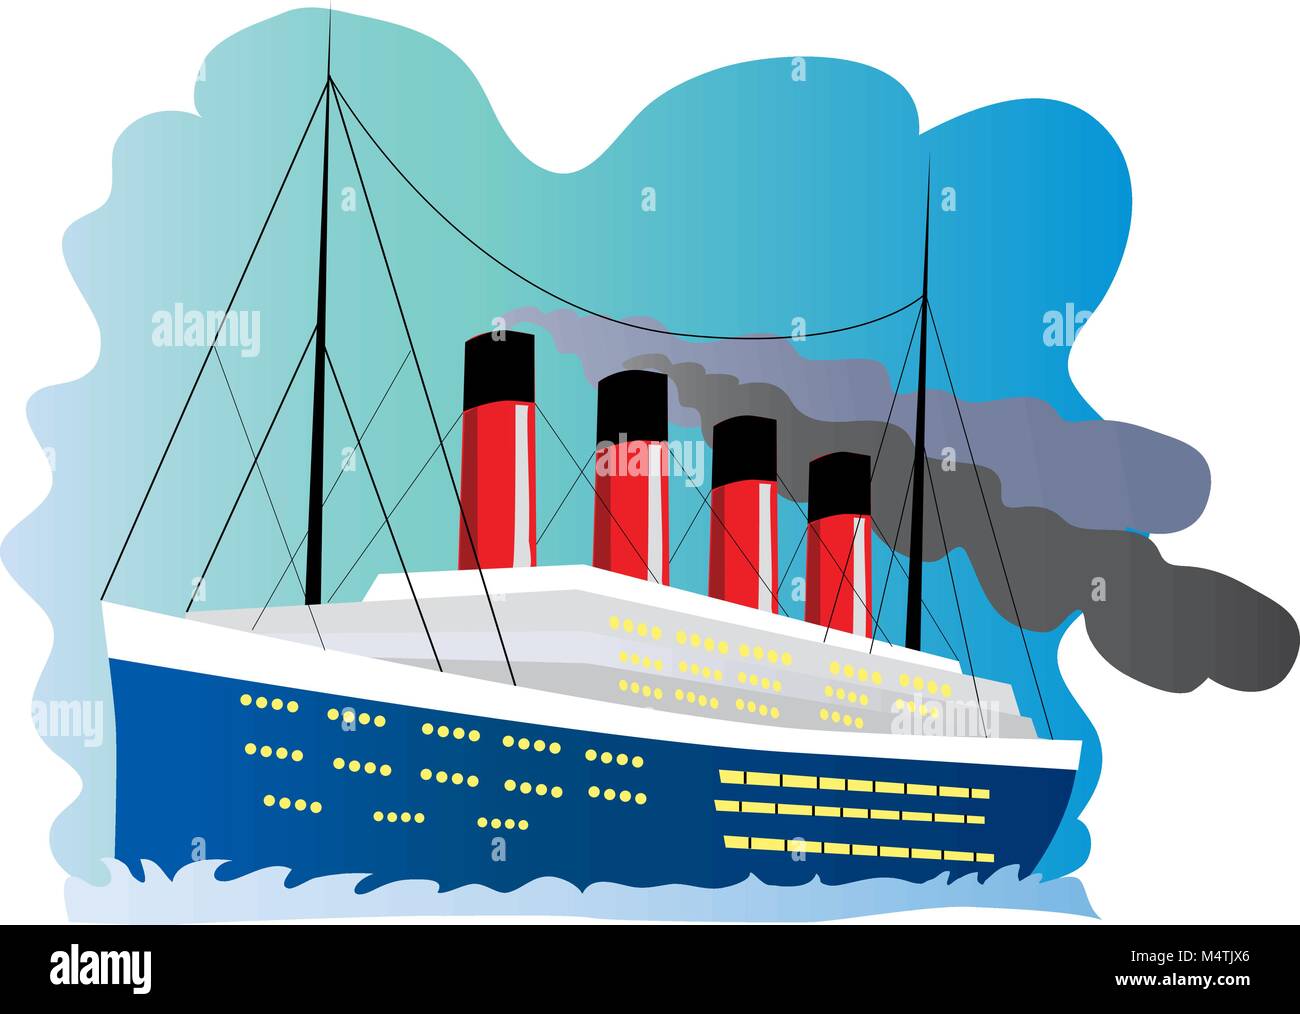 Un cartoon illustrazione della nave Titanic Immagine e Vettoriale - Alamy